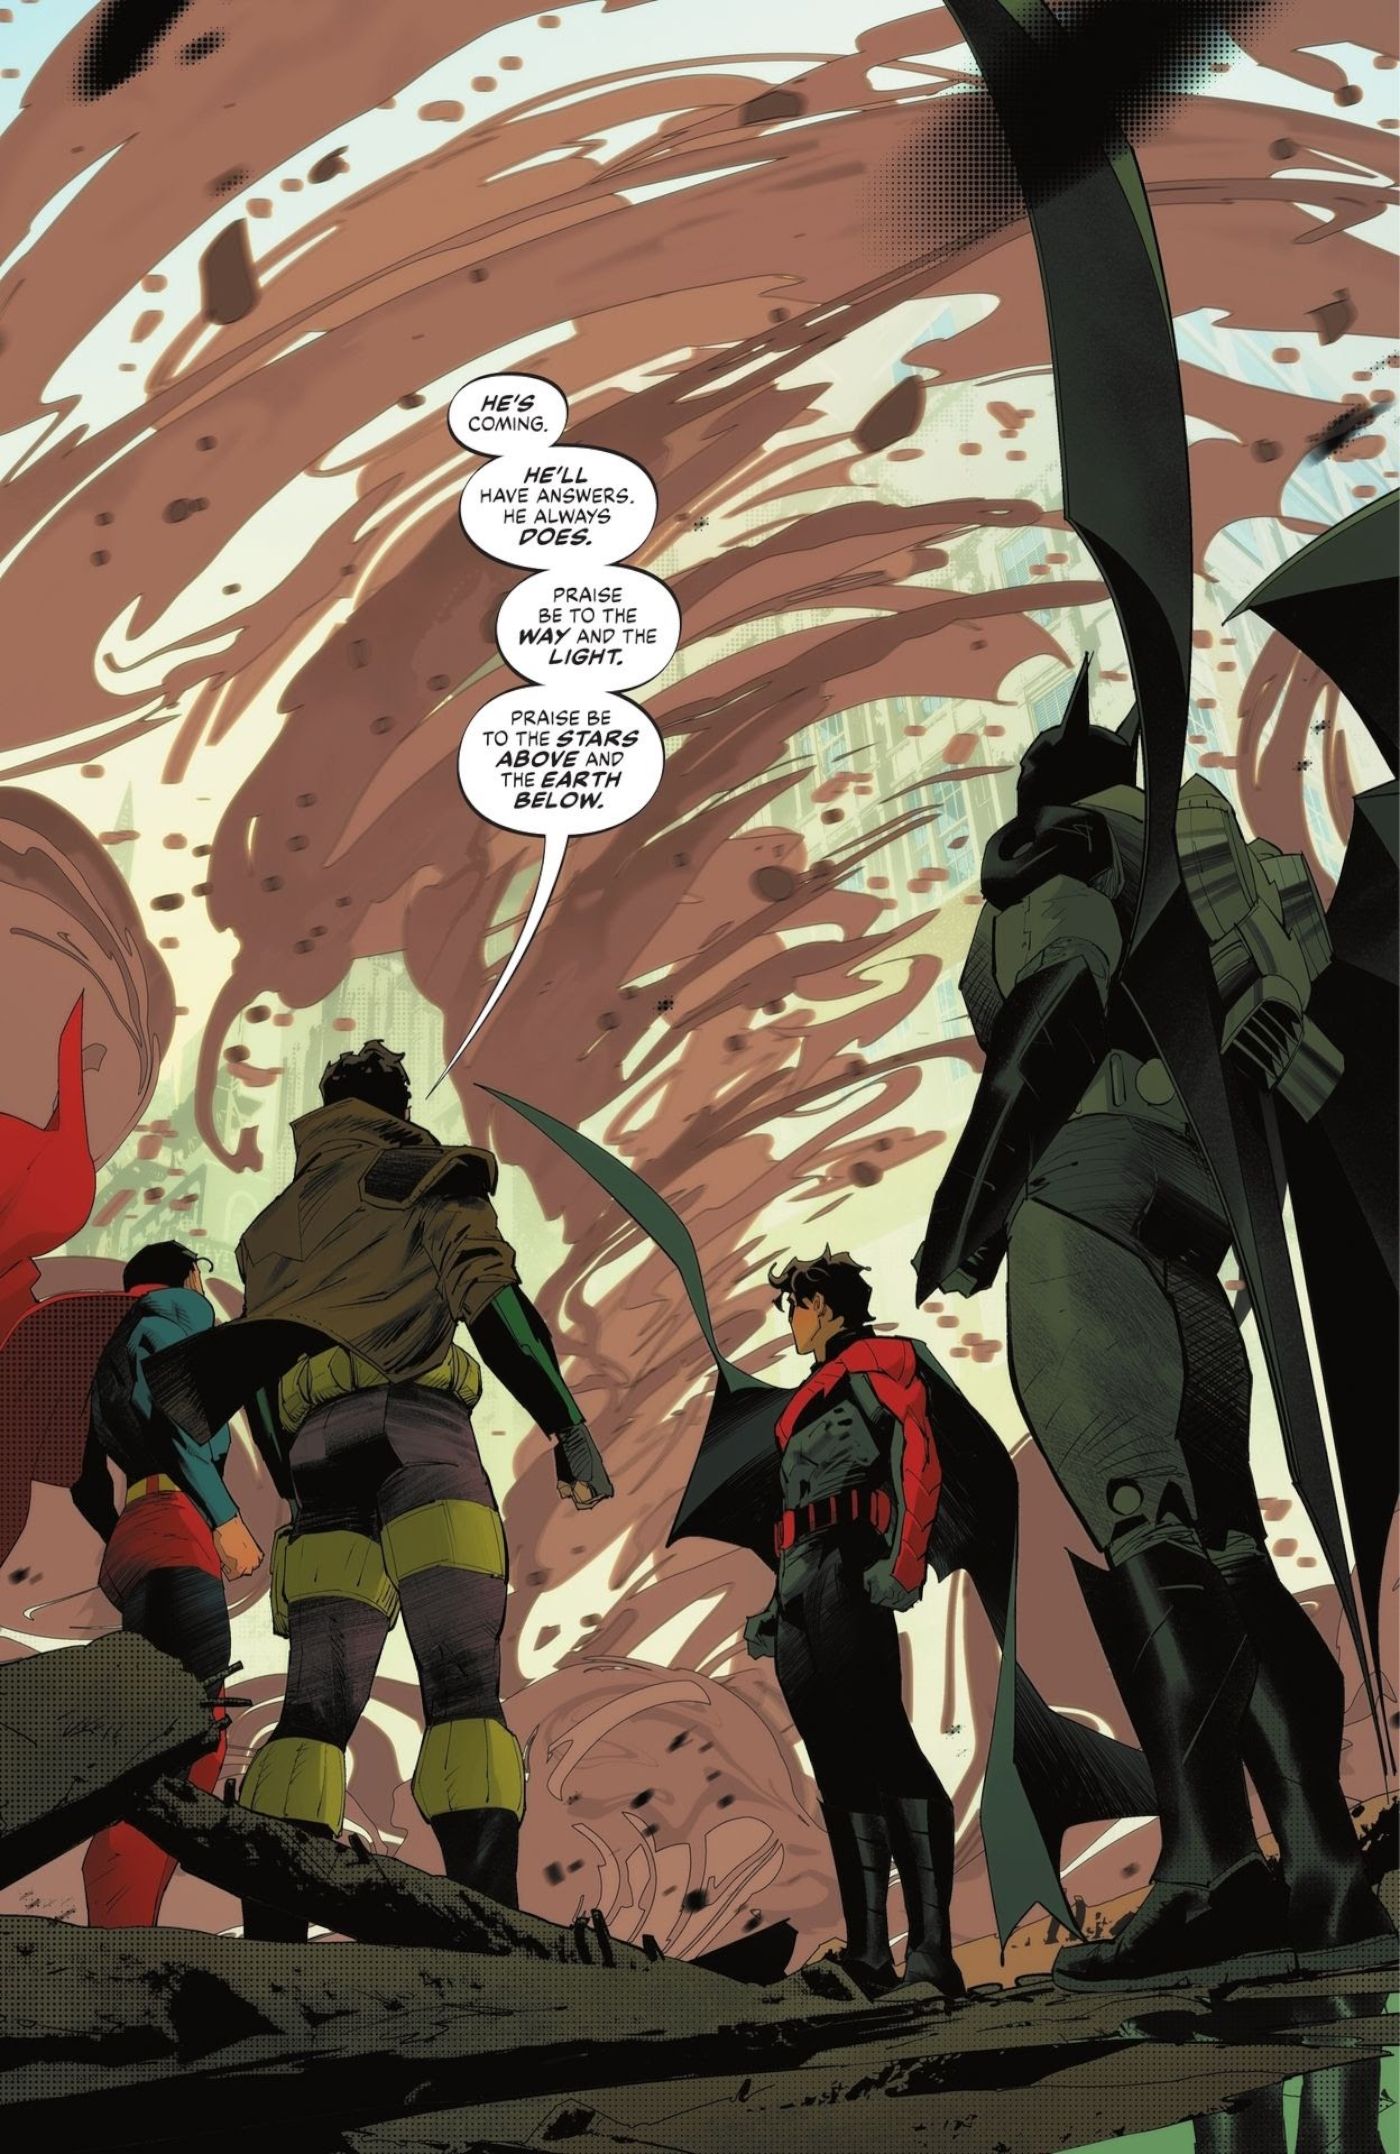 Comic-Seite: Kostümierte Superhelden stehen vor einem Wirbelsturm.